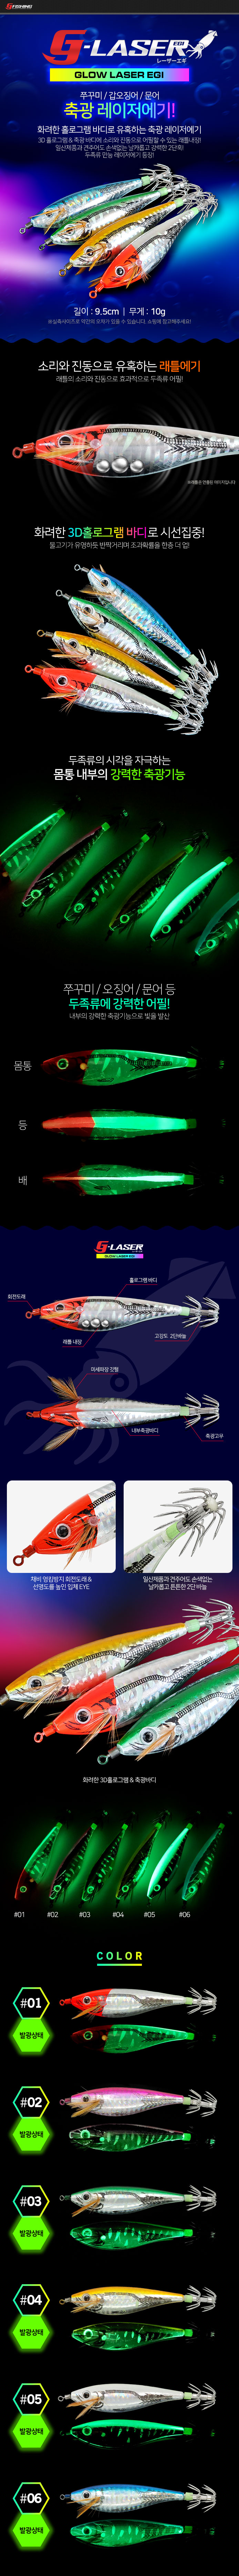 축광 레이저에기 쭈꾸미 갑오징어 문어